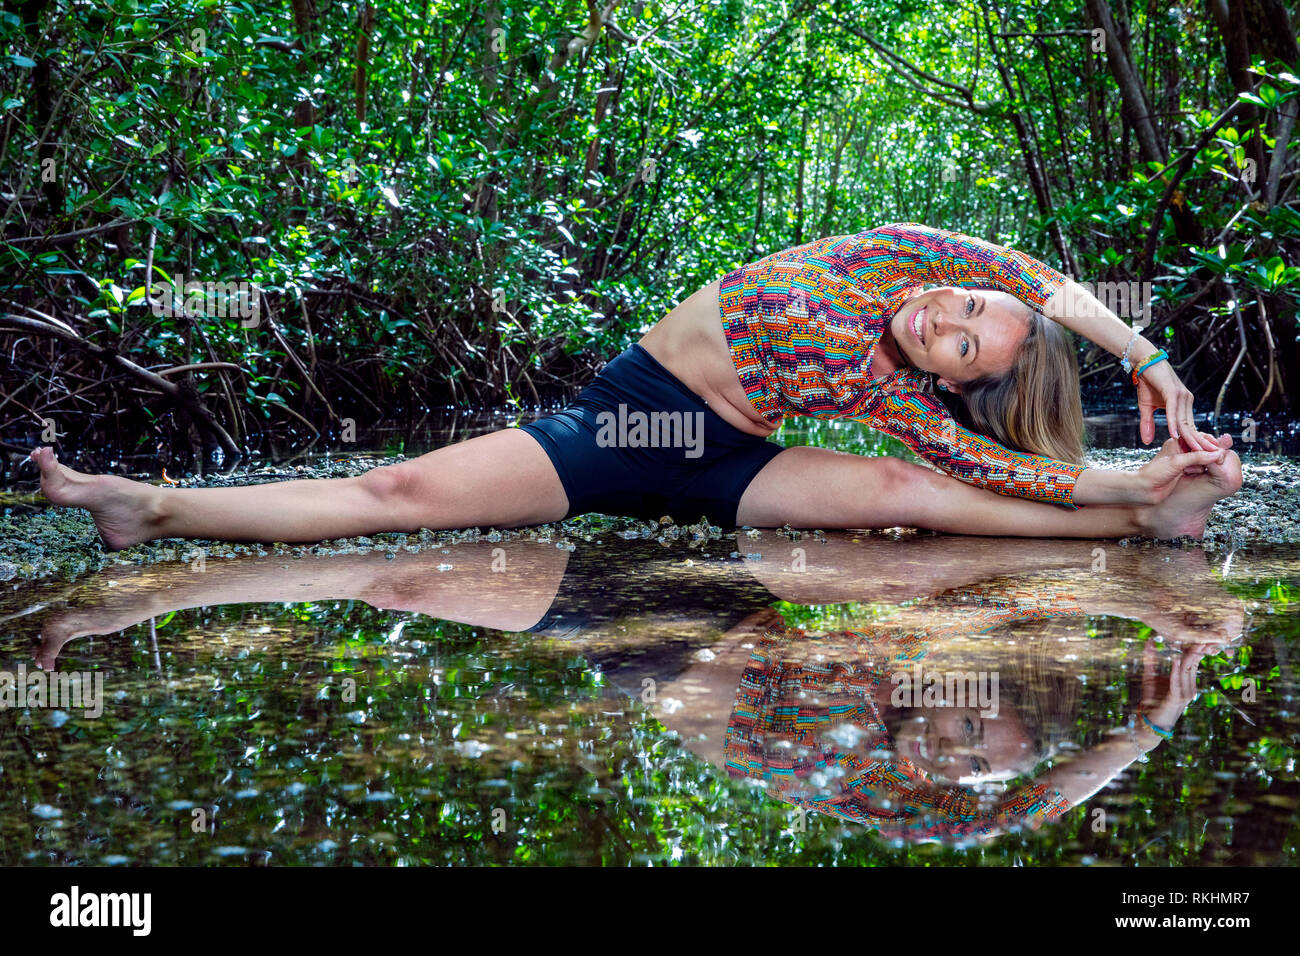 Junge Frau mit Yoga (stelzrad Split) in einer natürlichen Umgebung - Fort Lauderdale, Florida, USA Stockfoto